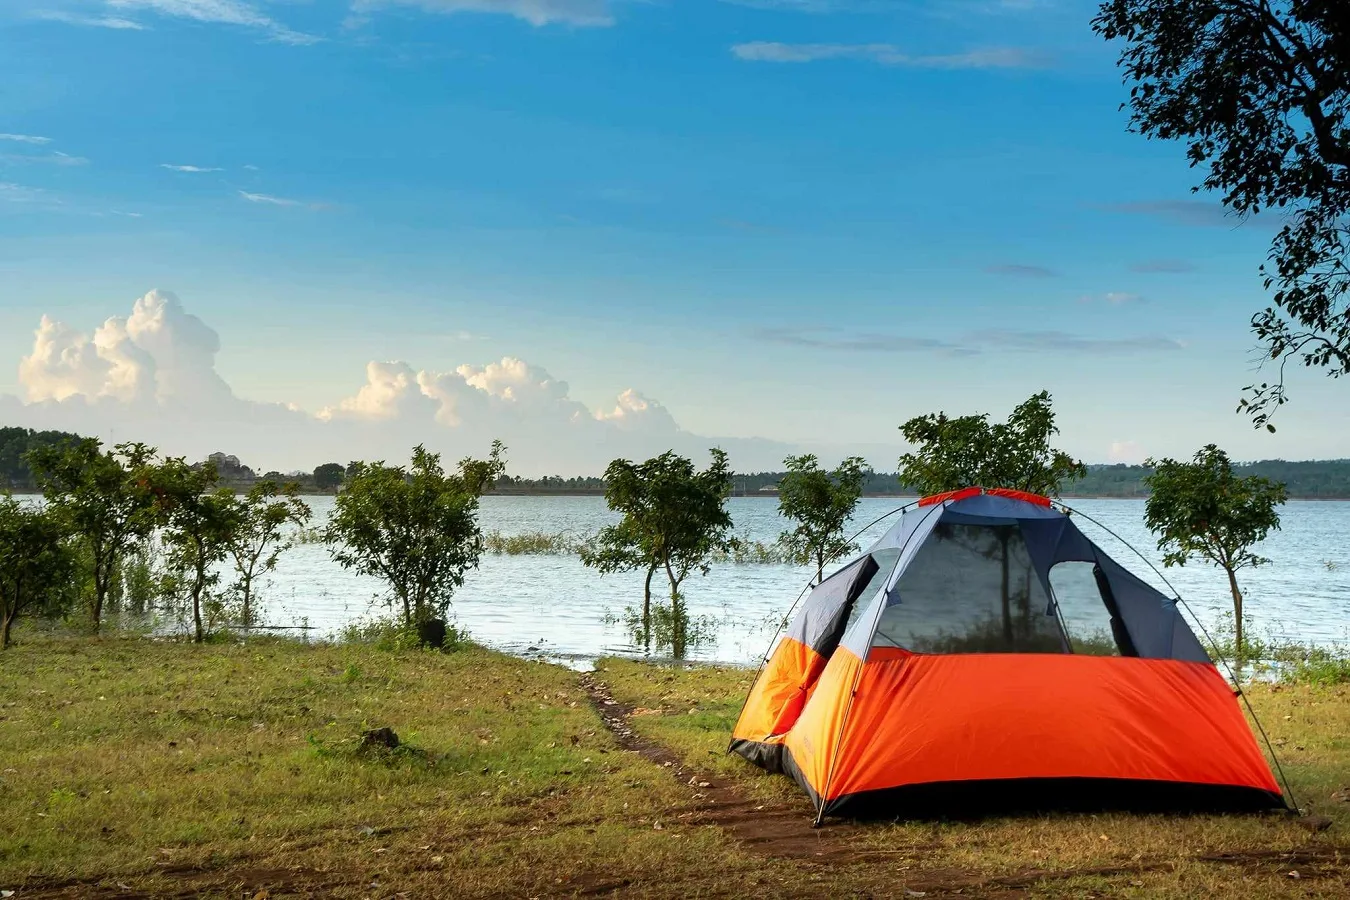 Il campeggio come alternativa economica per le vacanze